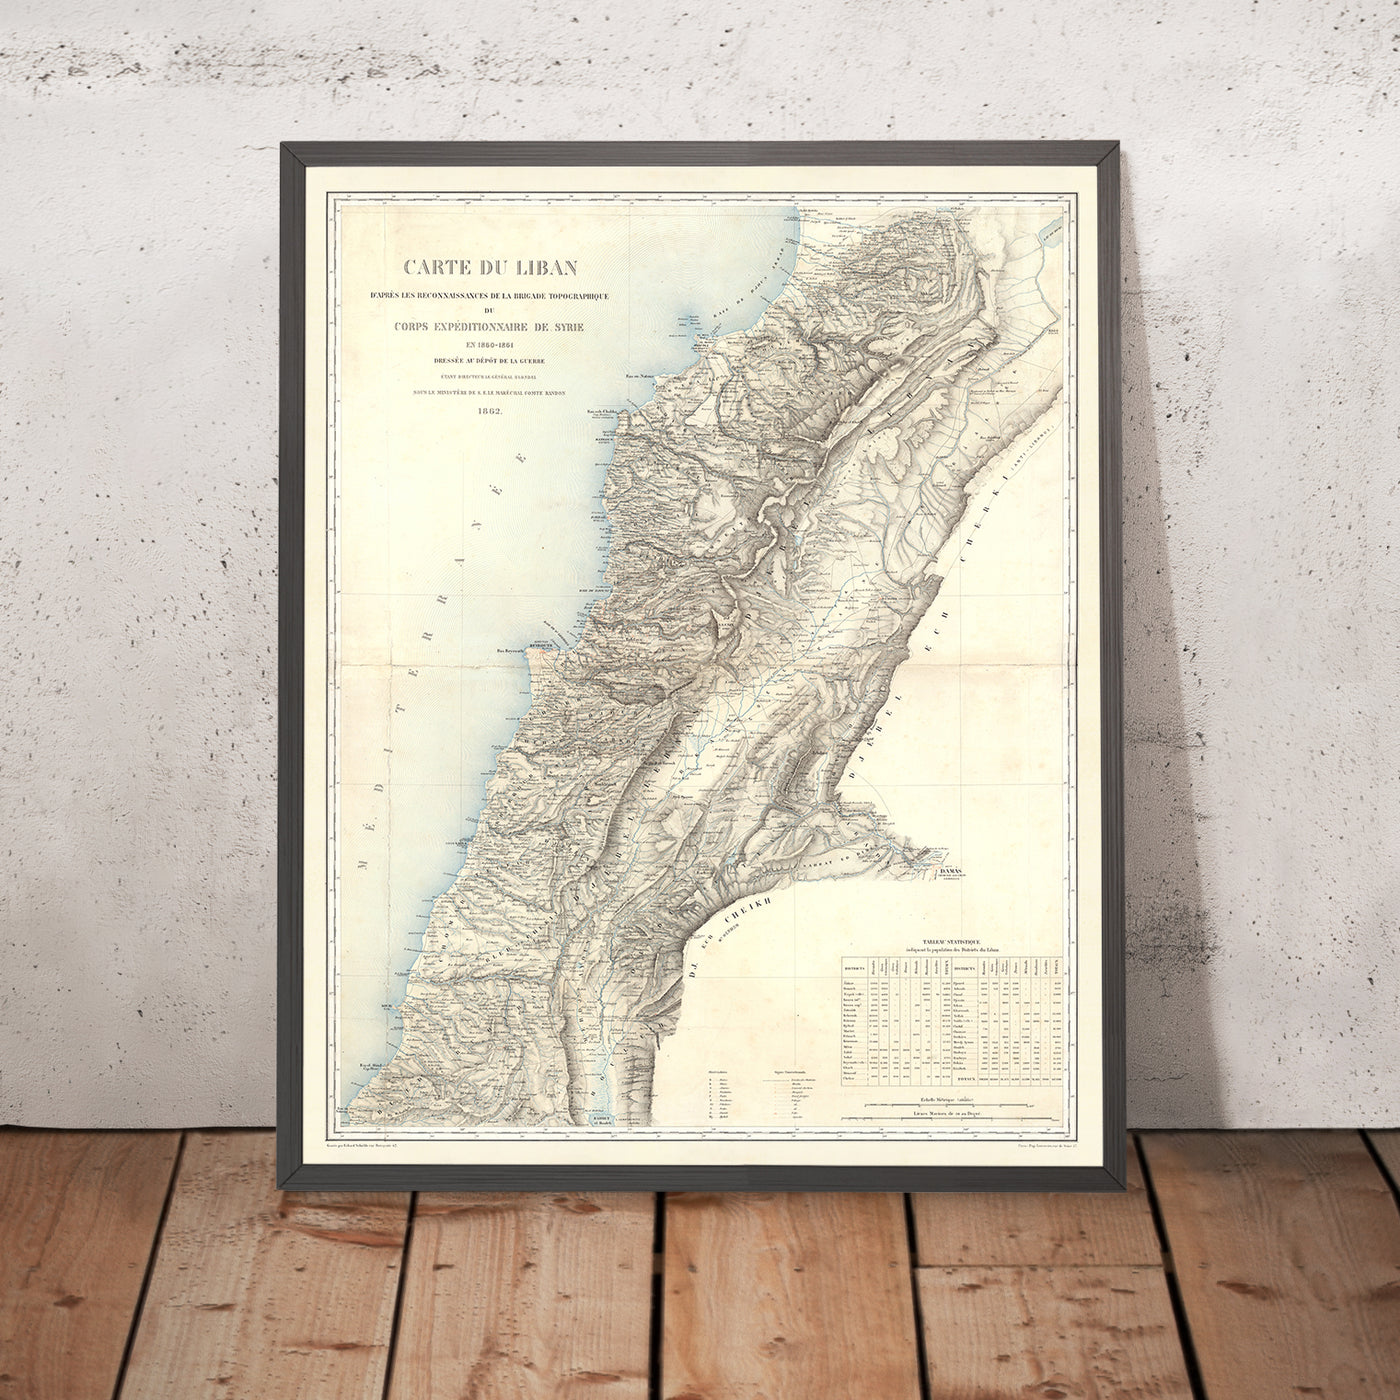 Alte Karte des Libanon von Depot De La Guerre, 1862: Beirut, Tripolis, Sidon, Tyrus, Byblos